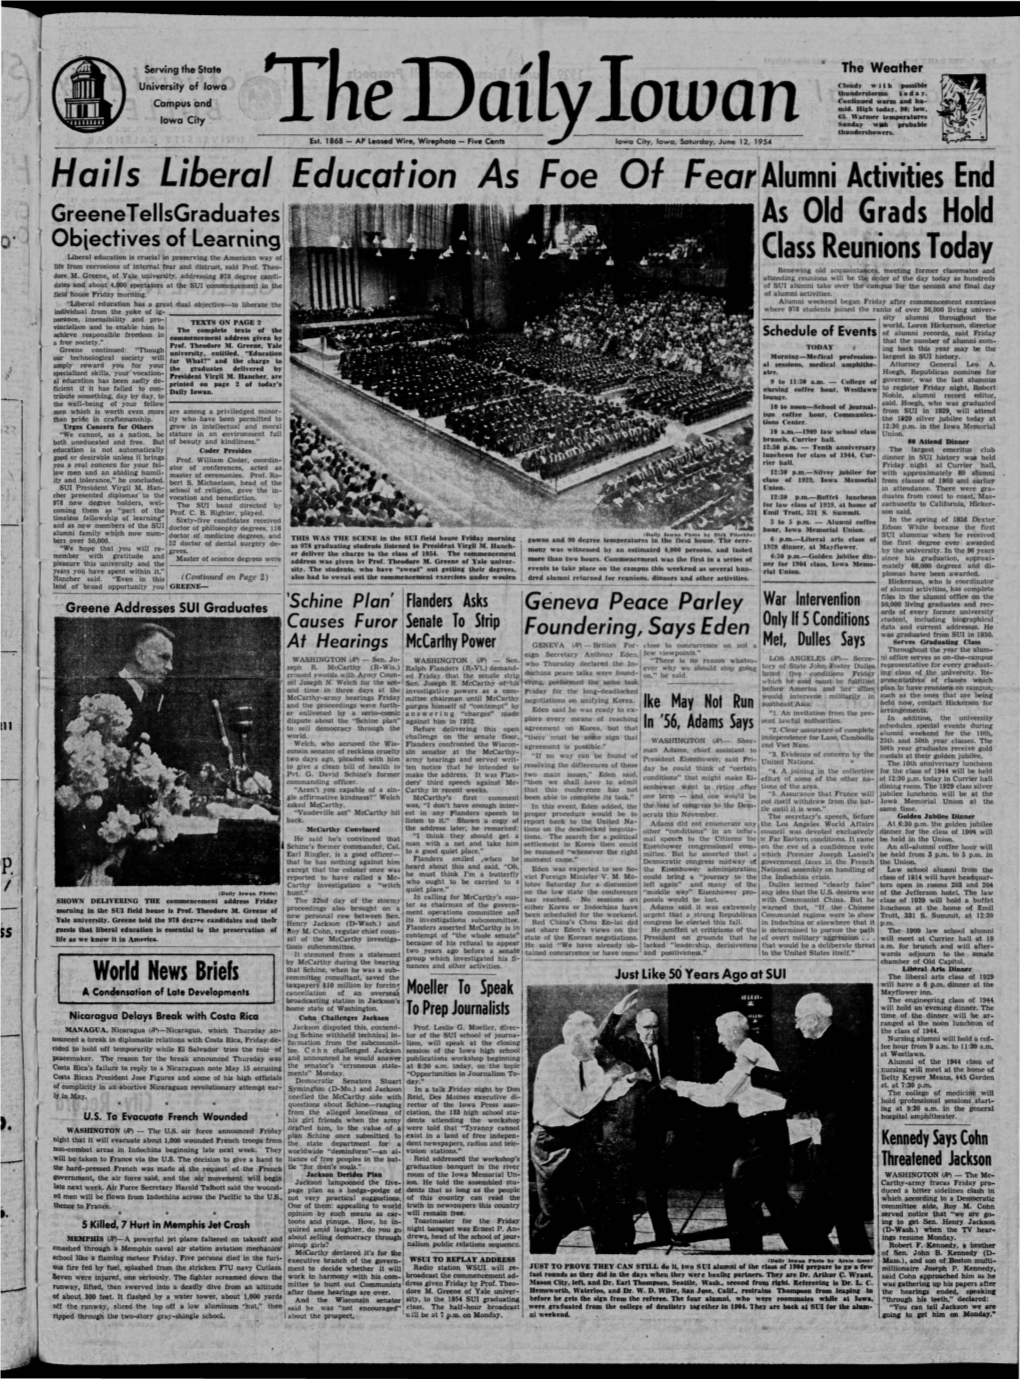 Daily Iowan (Iowa City, Iowa), 1954-06-12